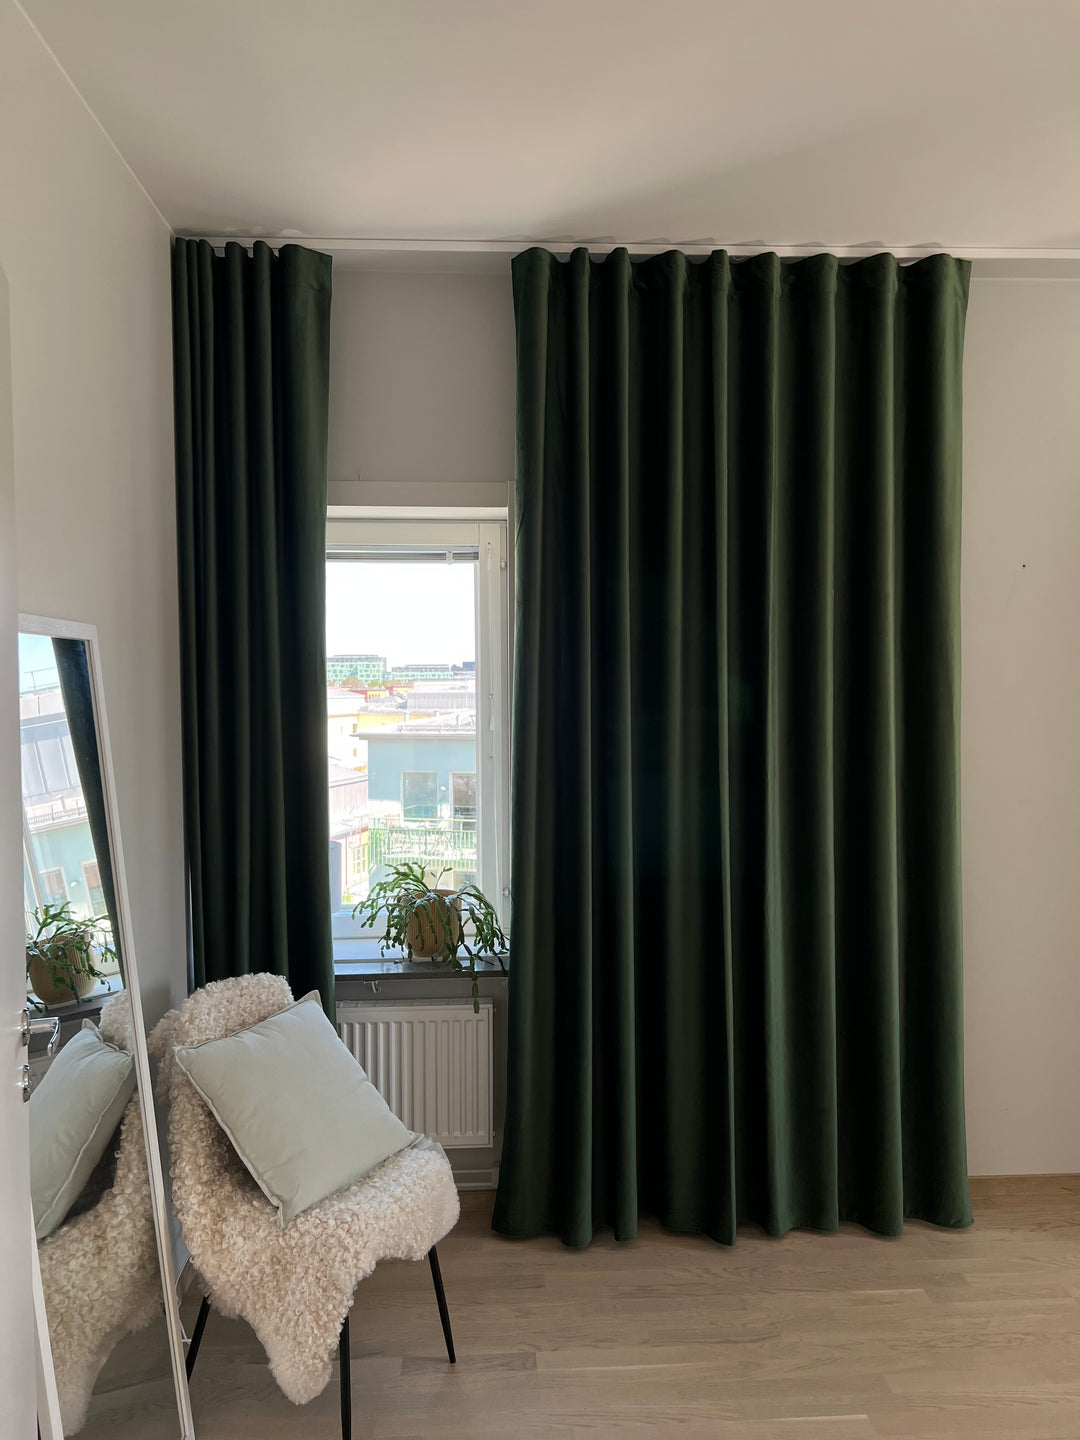 Gröna gardiner i sammet. Sammetsgardiner passar utmärkt i sovrum som mörkläggning och en mysfaktor. 